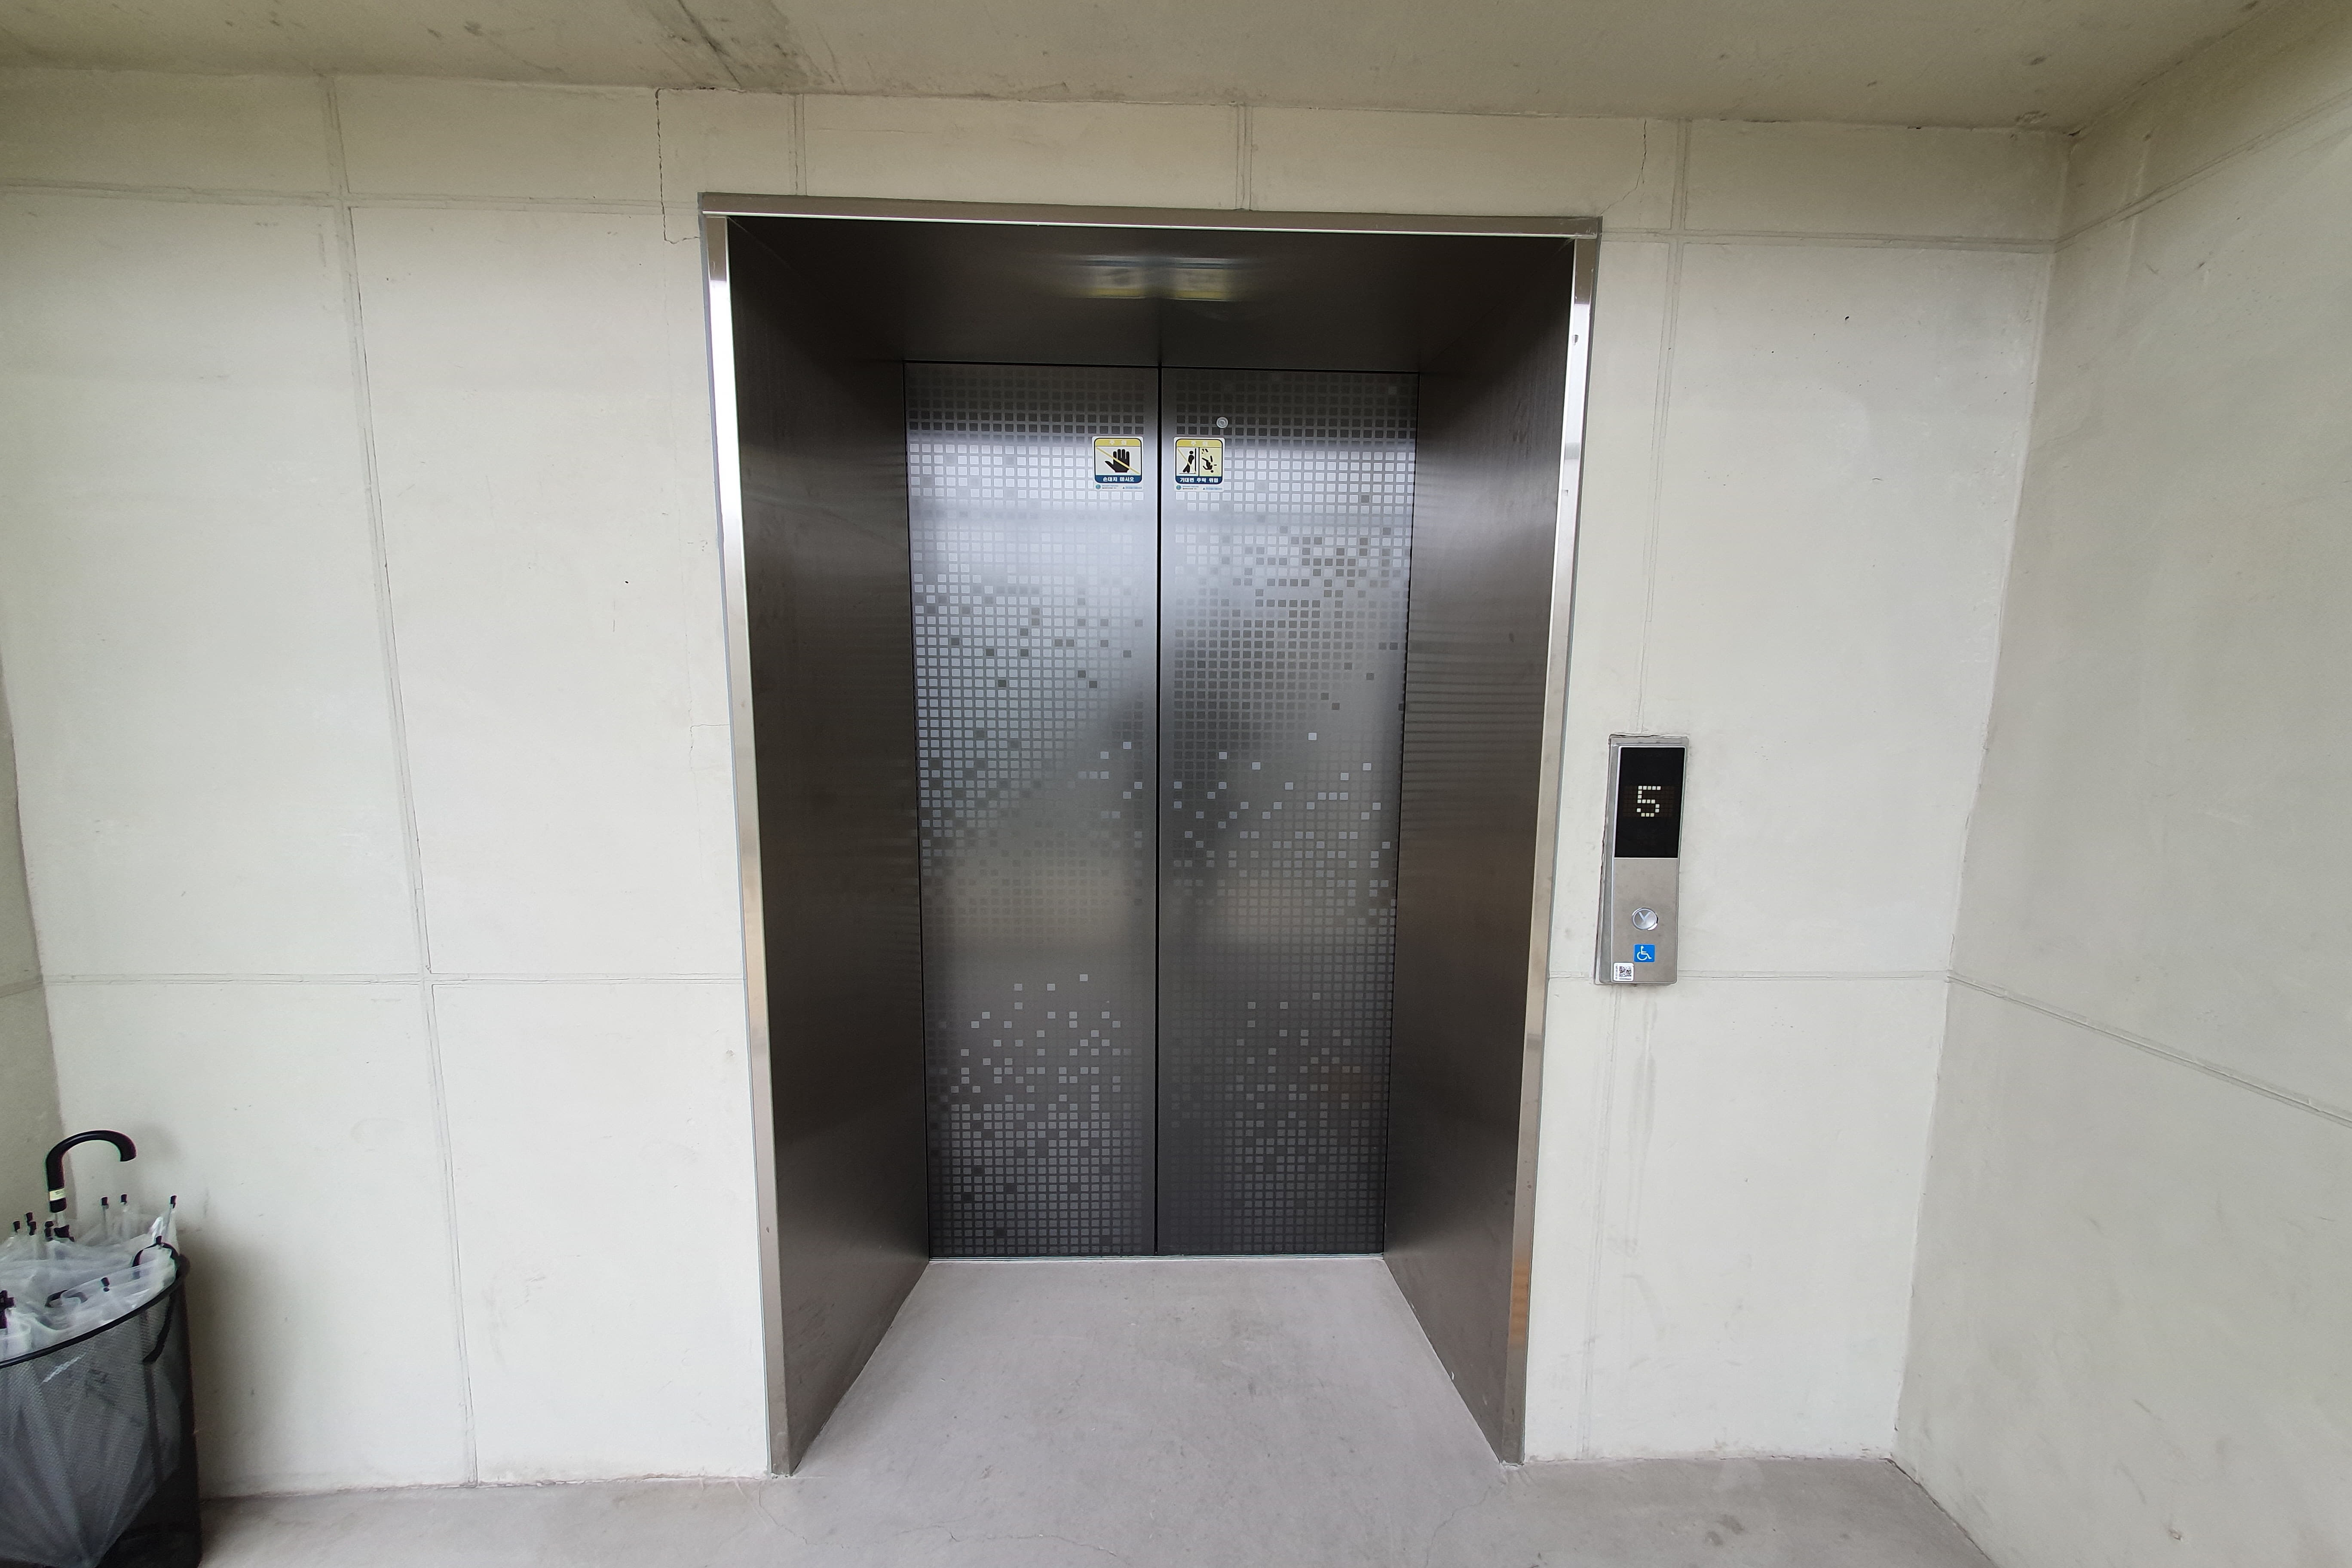 엘리베이터0 : 사비나미술관 엘리베이터 사진입니다.